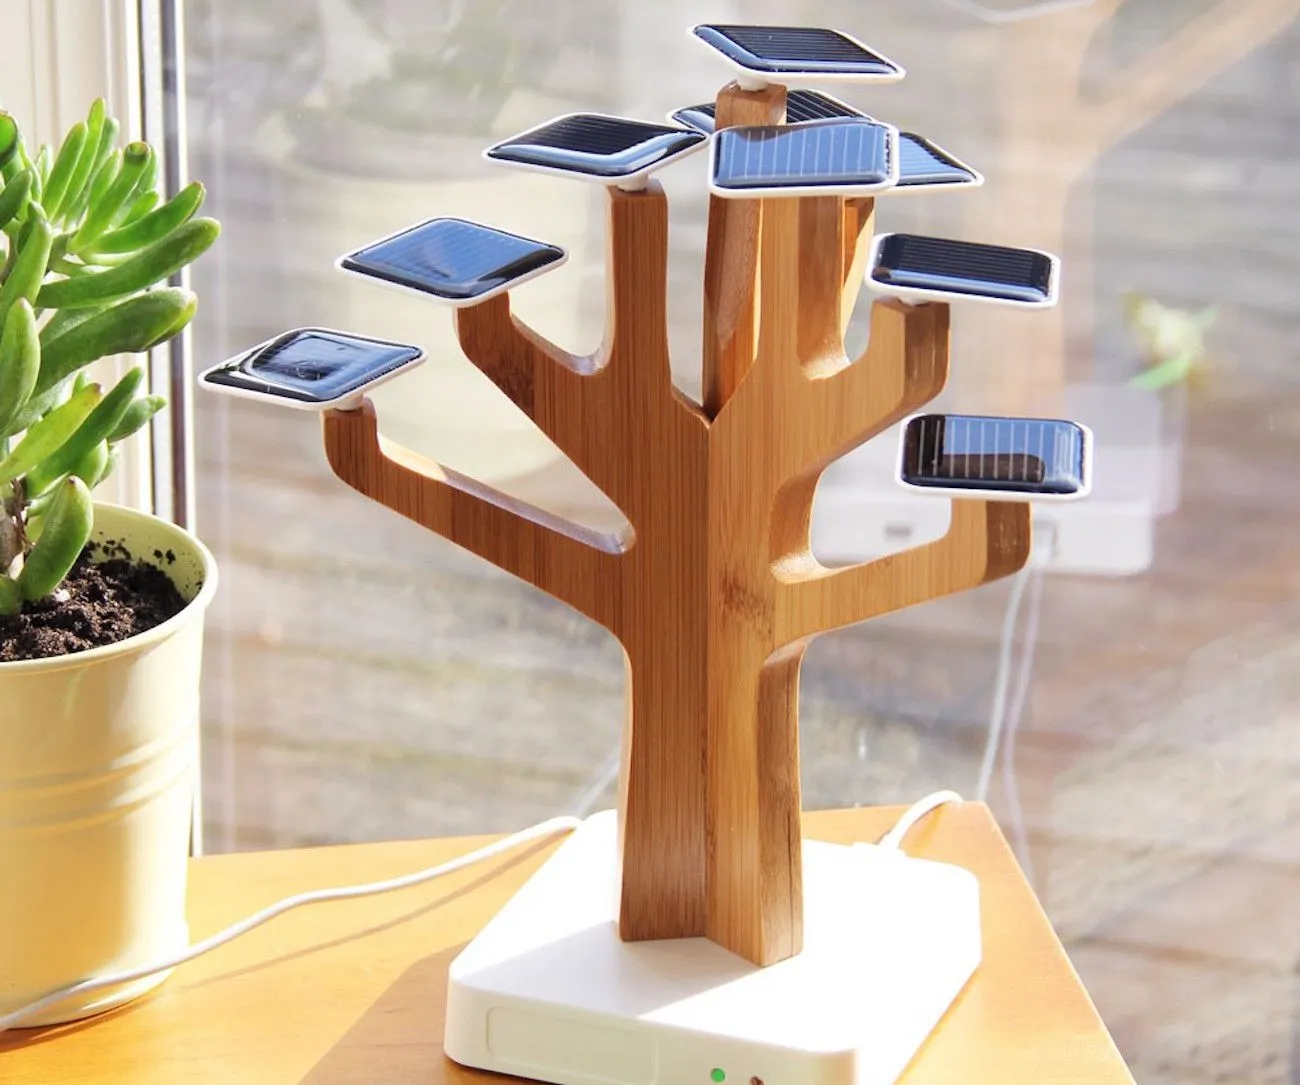 Solaire Suntree Batteries chargeur batterie externe pour téléphones portables, Creative Solartree charge arbre de vie décoration de la maison cadeau oeuvre